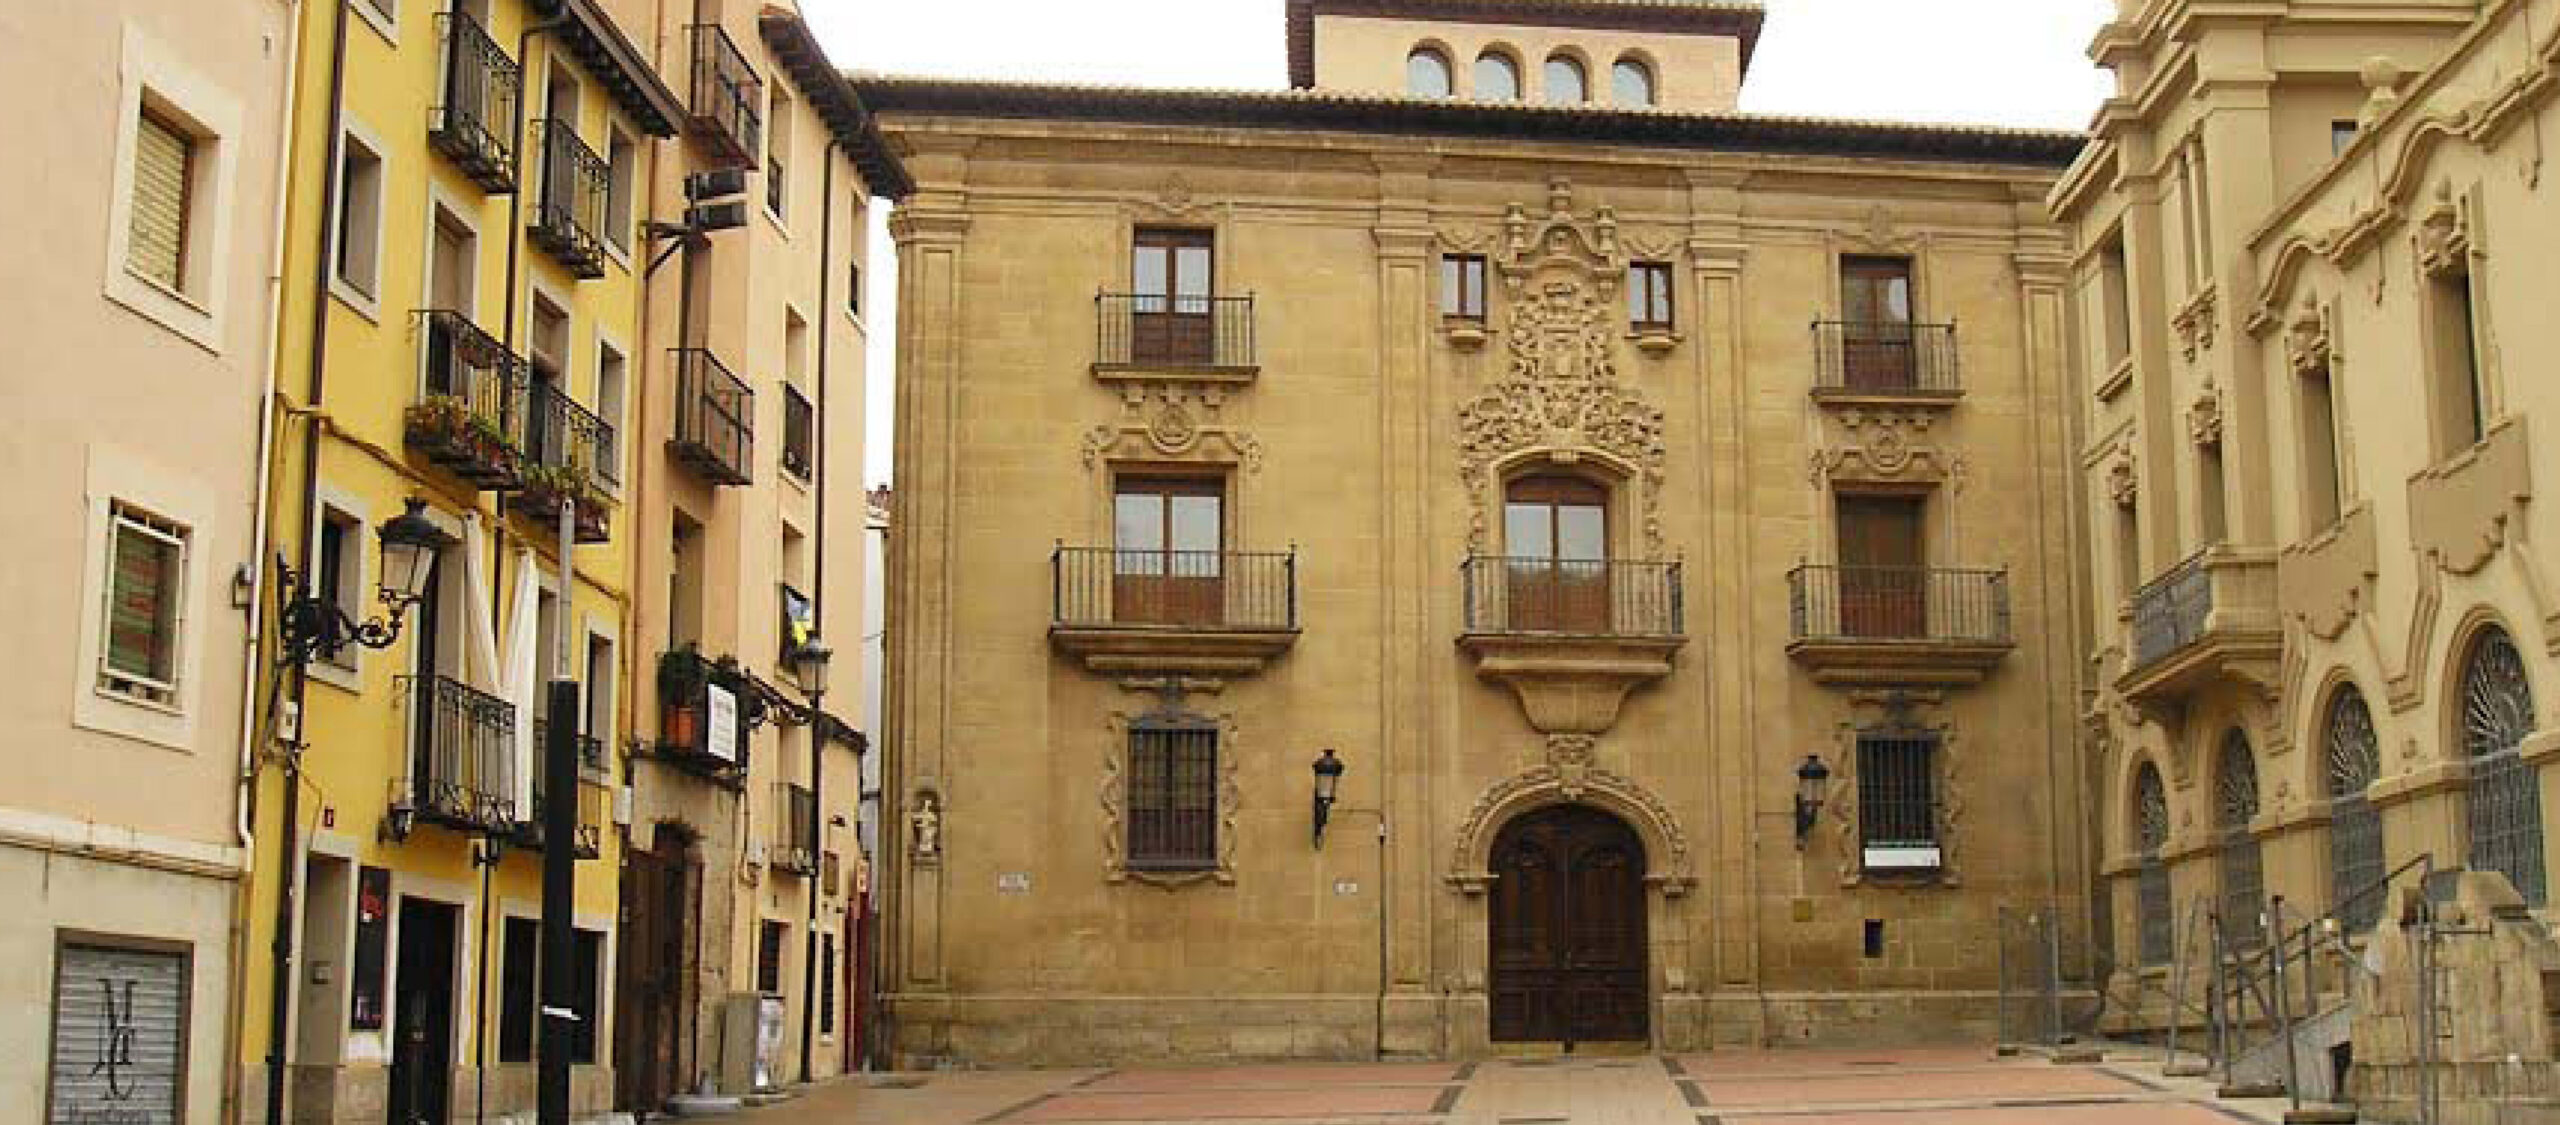 MUSEO DE LA RIOJA		Logroño	La Rioja	Museo